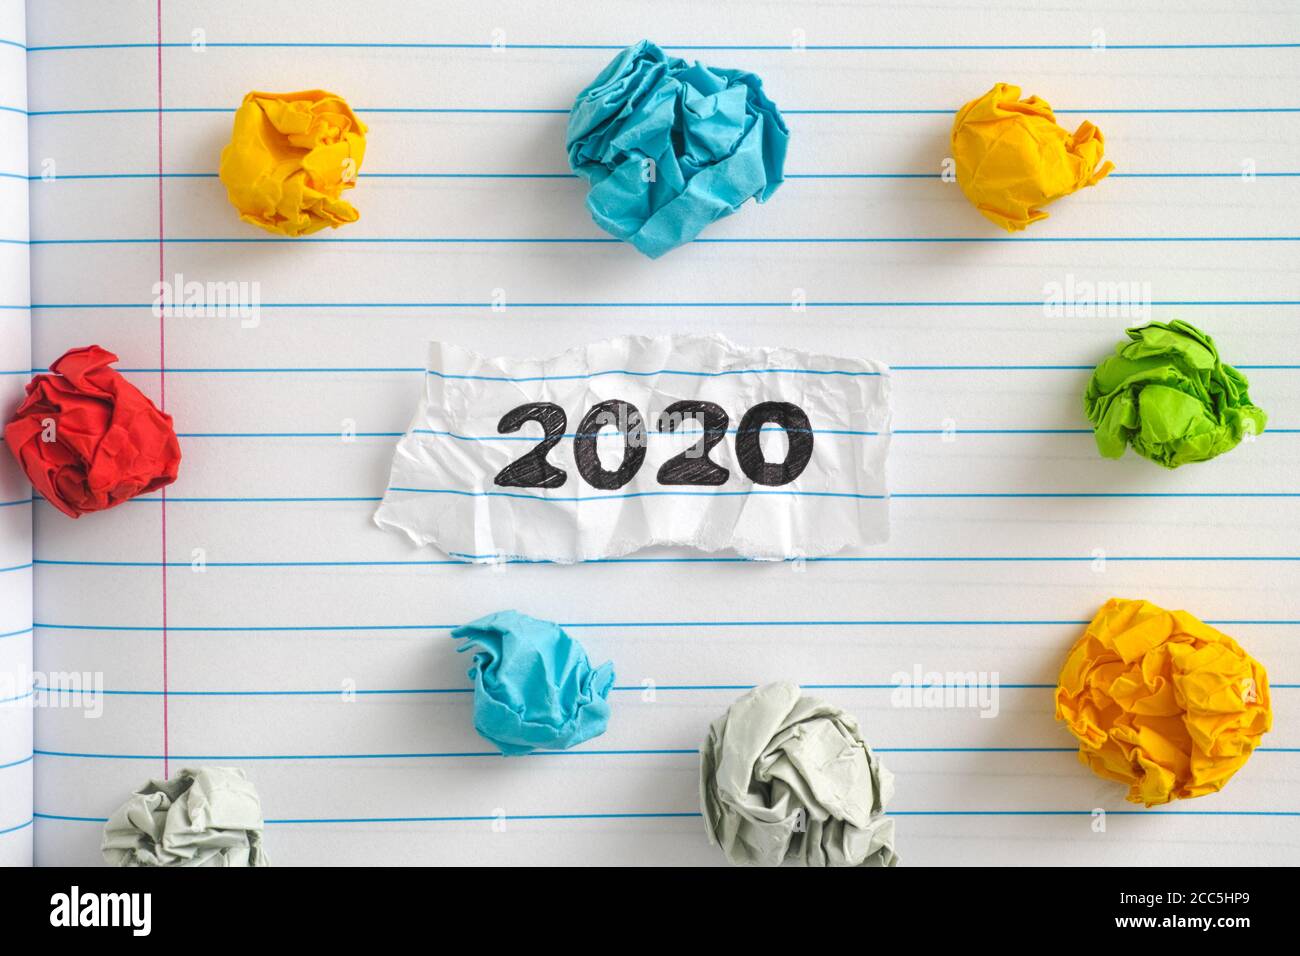 L'année 2020. Un morceau de papier avec l'année 2020 écrit dessus sur une feuille de carnet avec quelques boules de papier froissé colorées autour d'elle. Gros plan. Banque D'Images